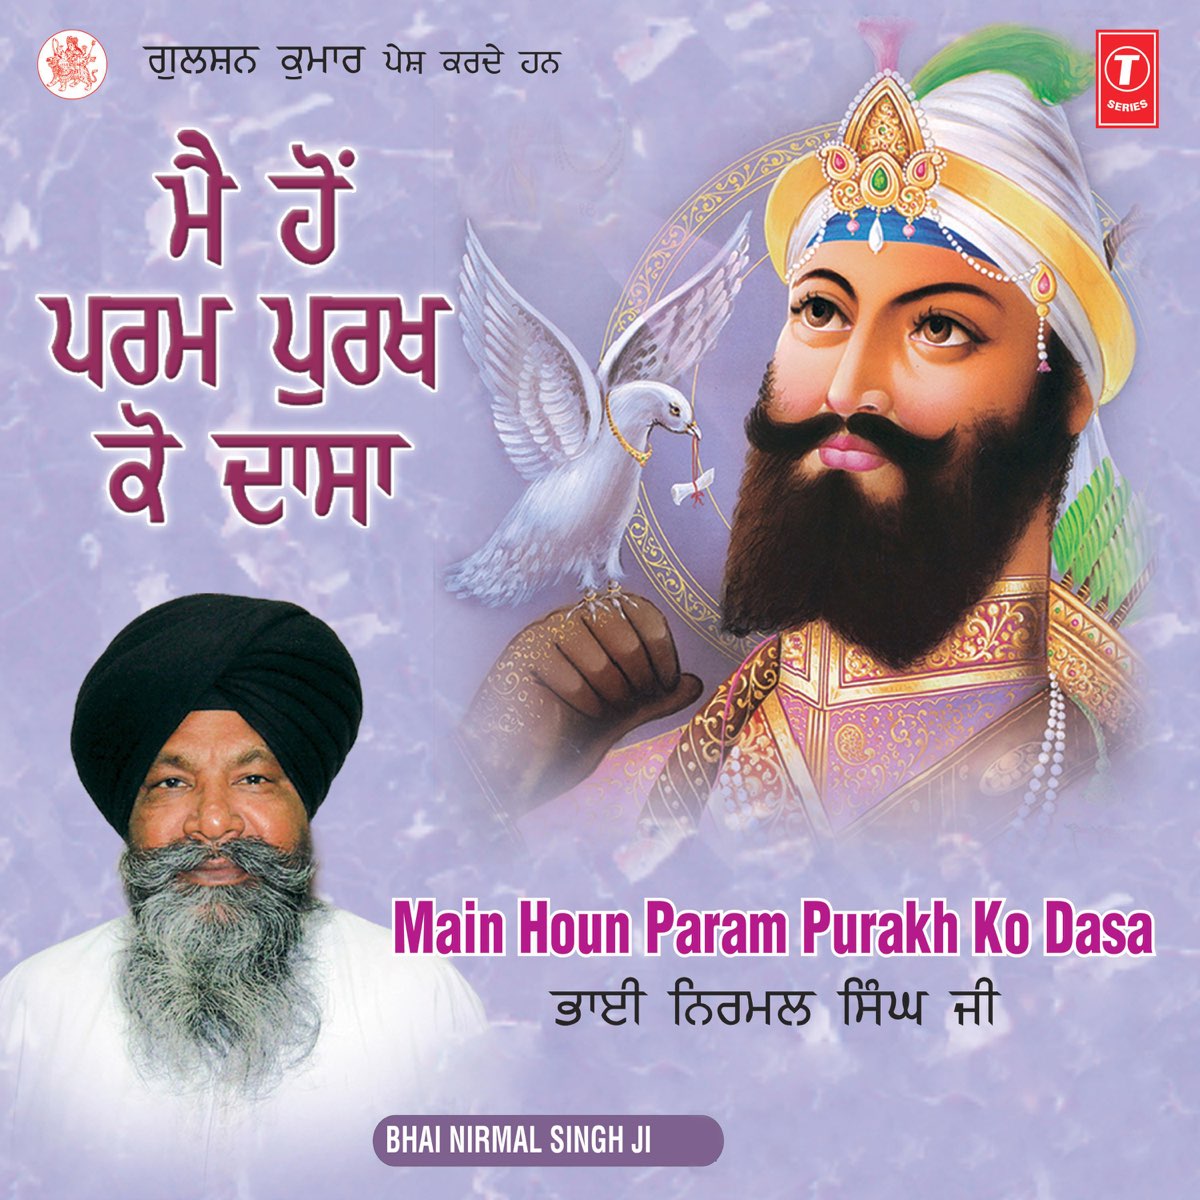 Main Houn Param Purakh Ko Dasa by Bhai Nirmal Singh Ji on Apple Music